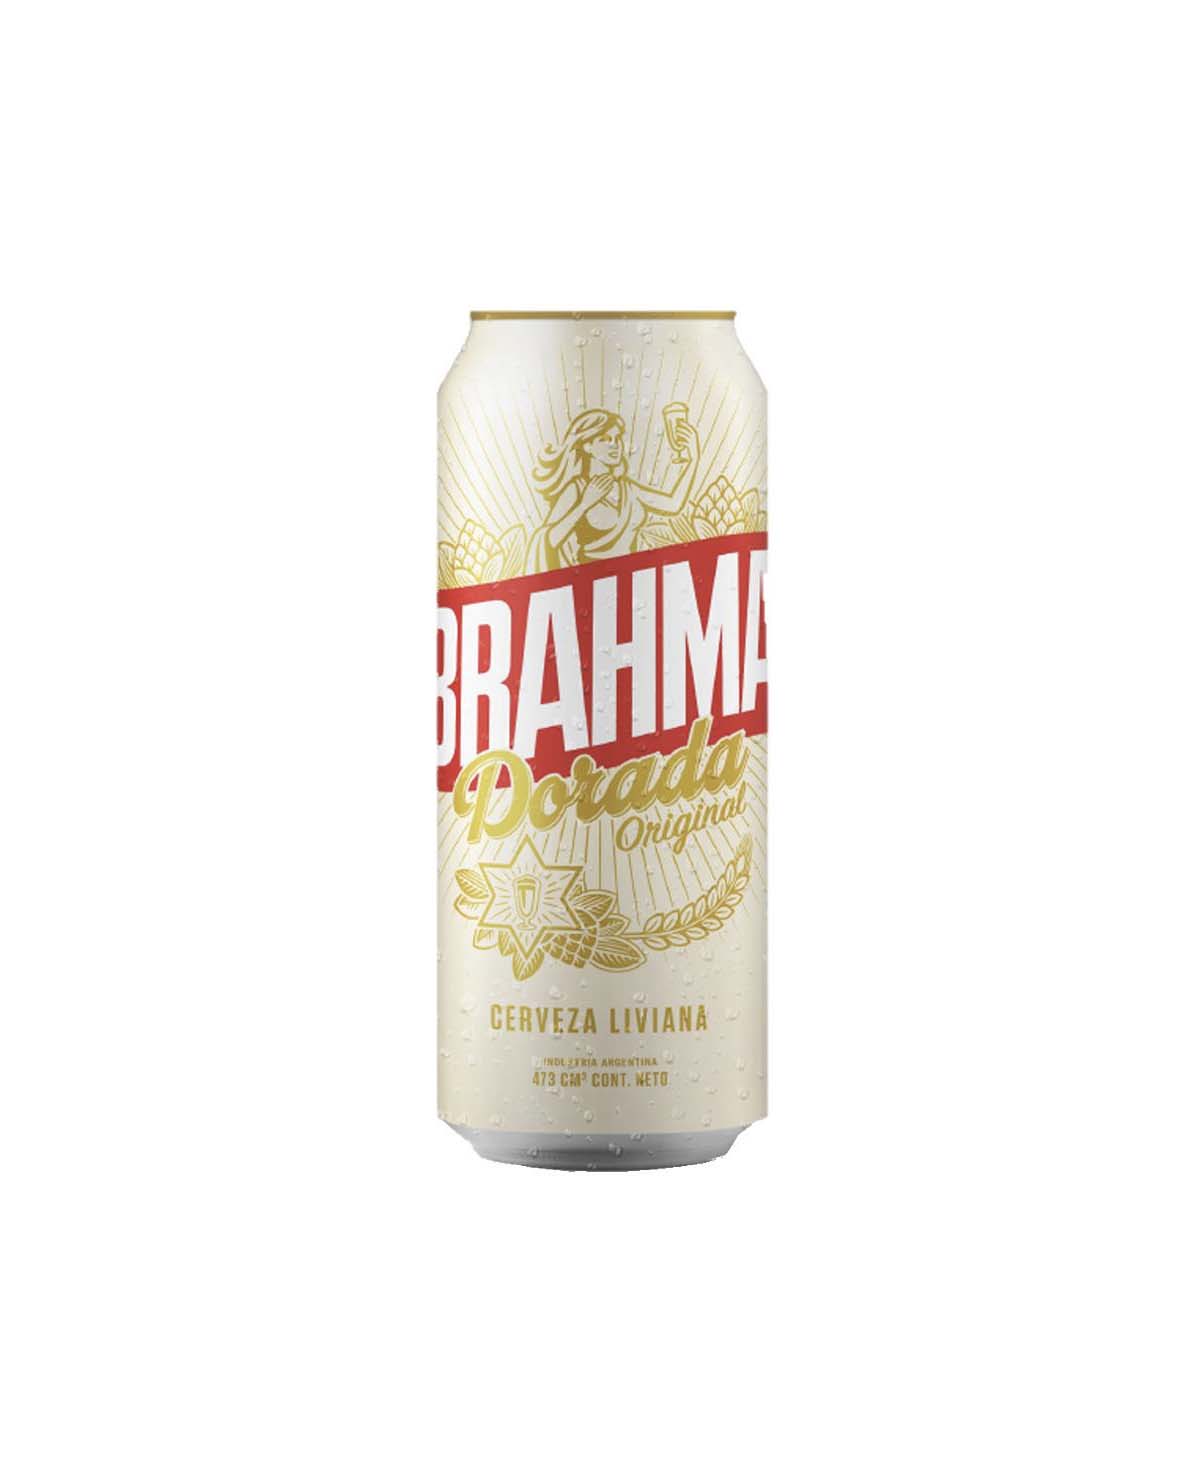 Cerveza Brahma Dorada Original x 473 Cm3